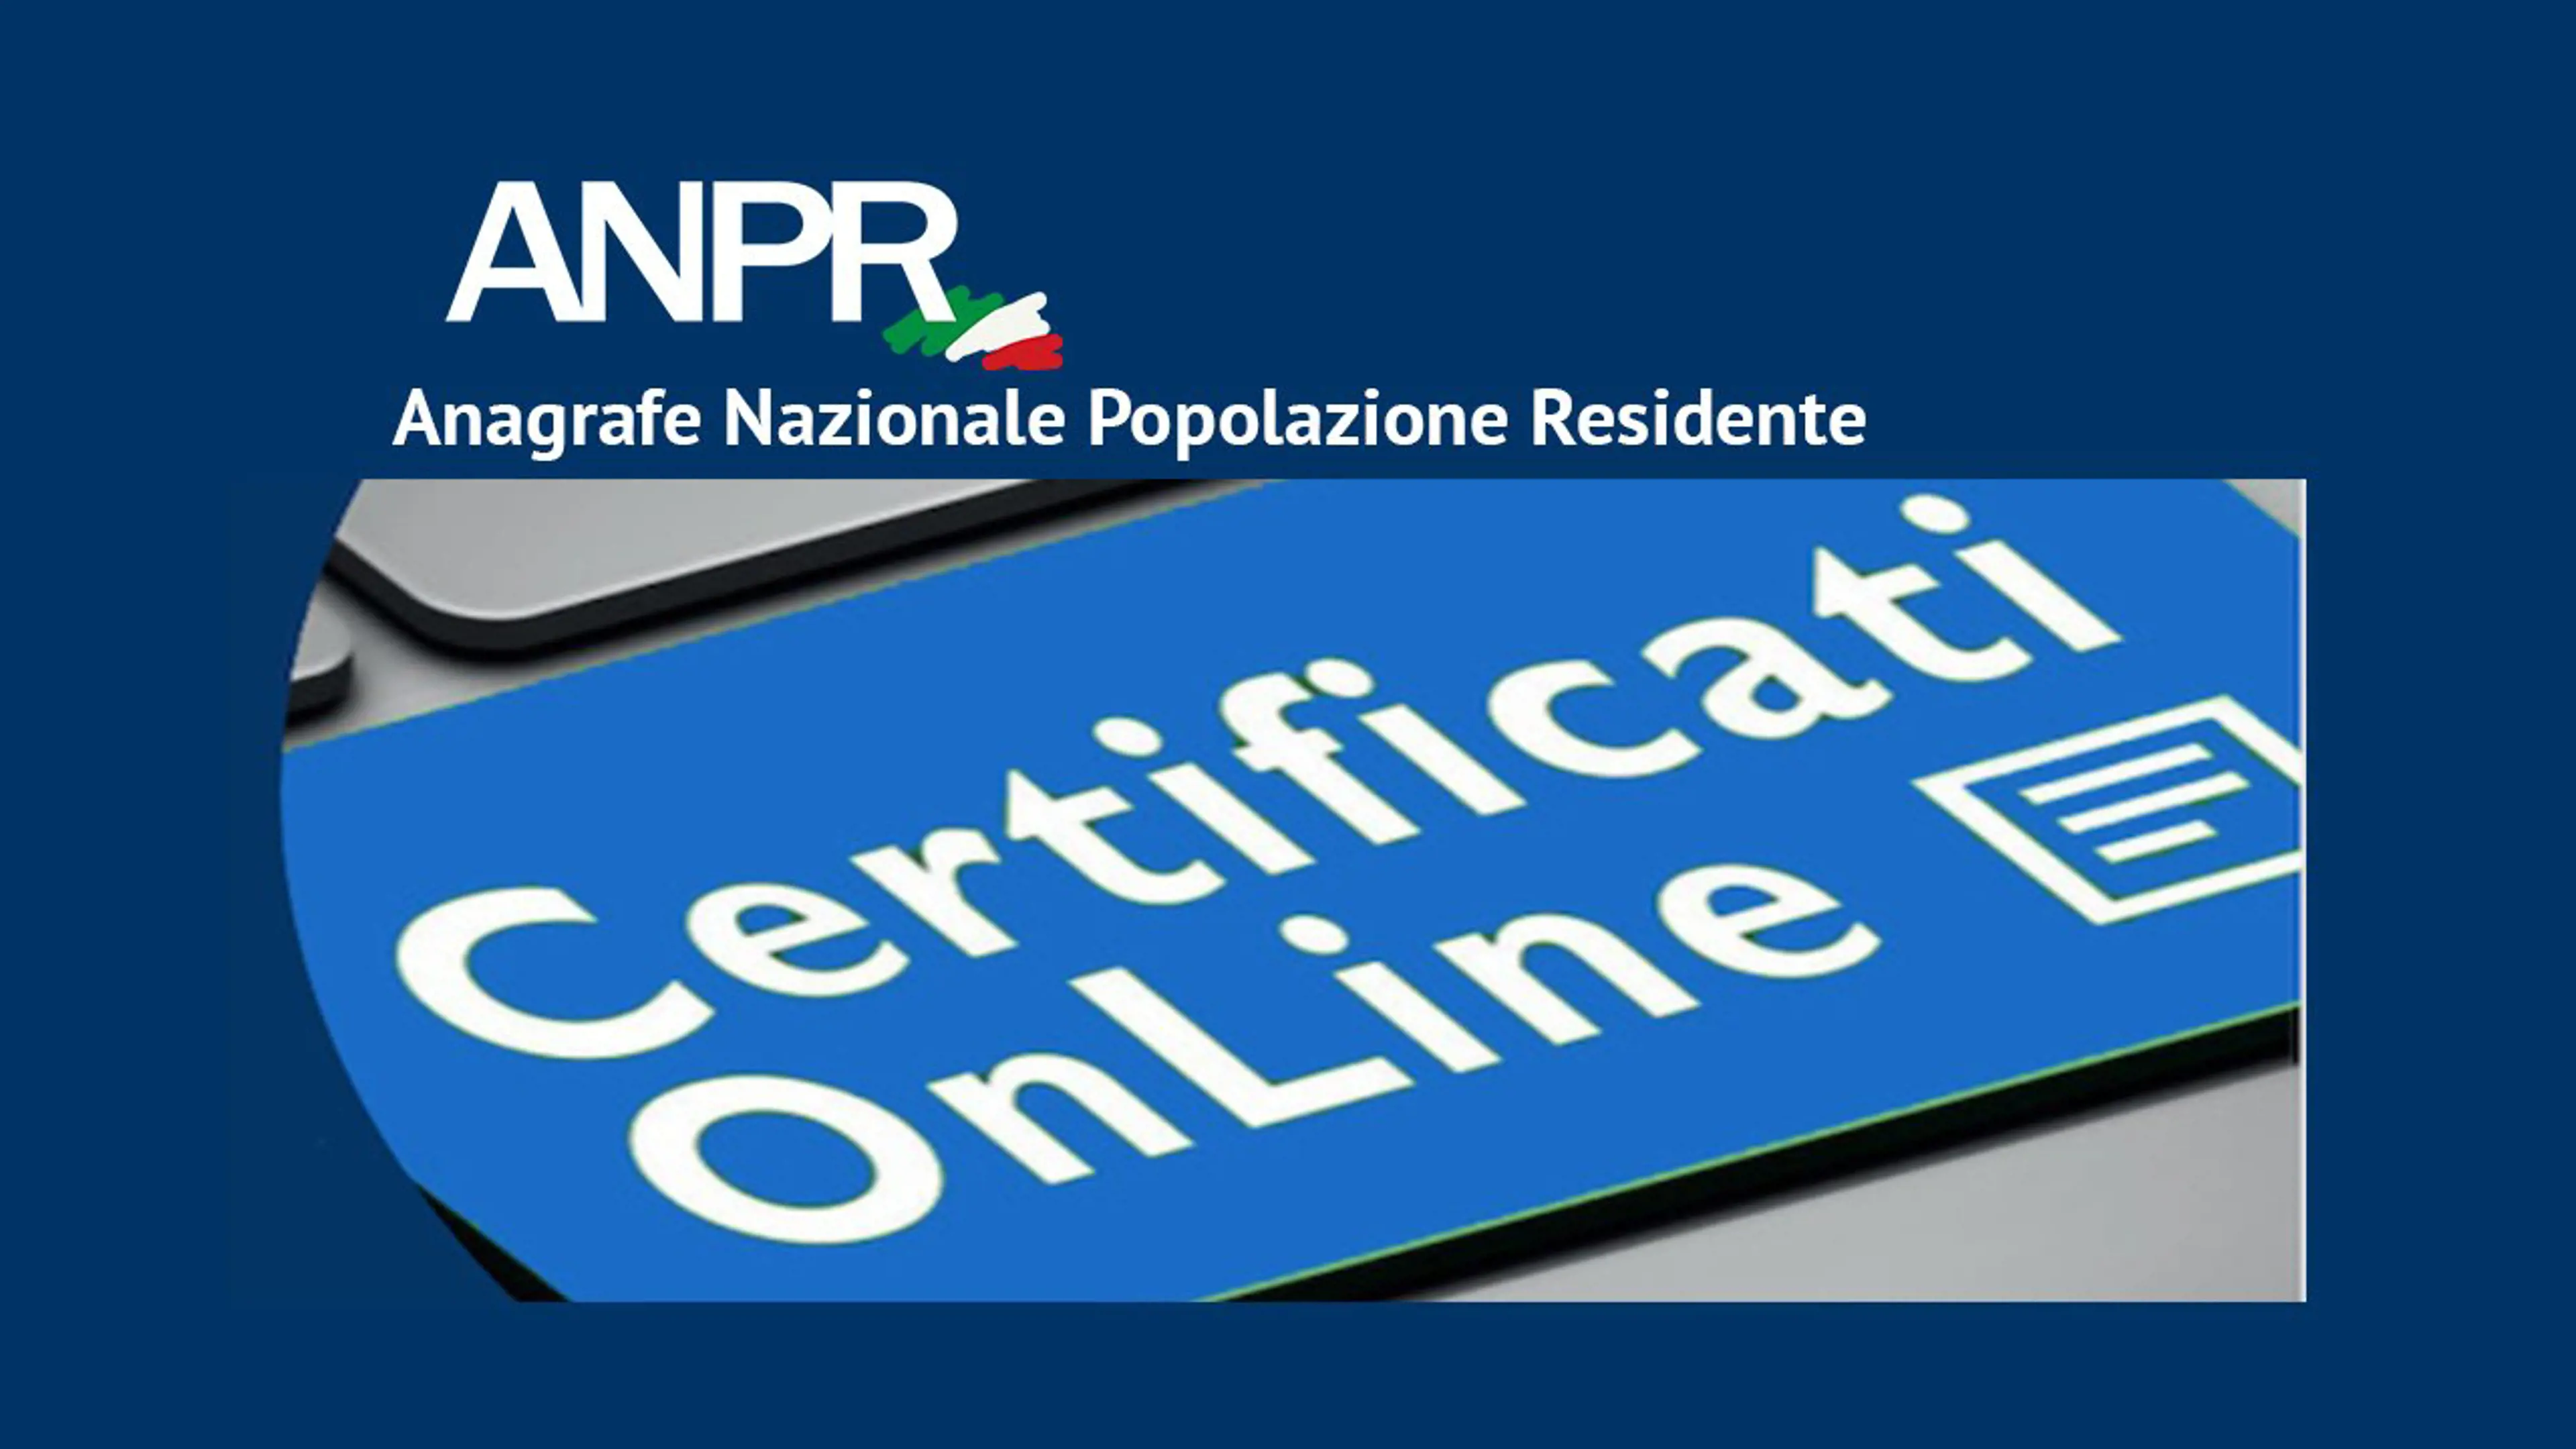 Certificati on line - Anpr (Anagrafe Nazionale Popolazione Residente)